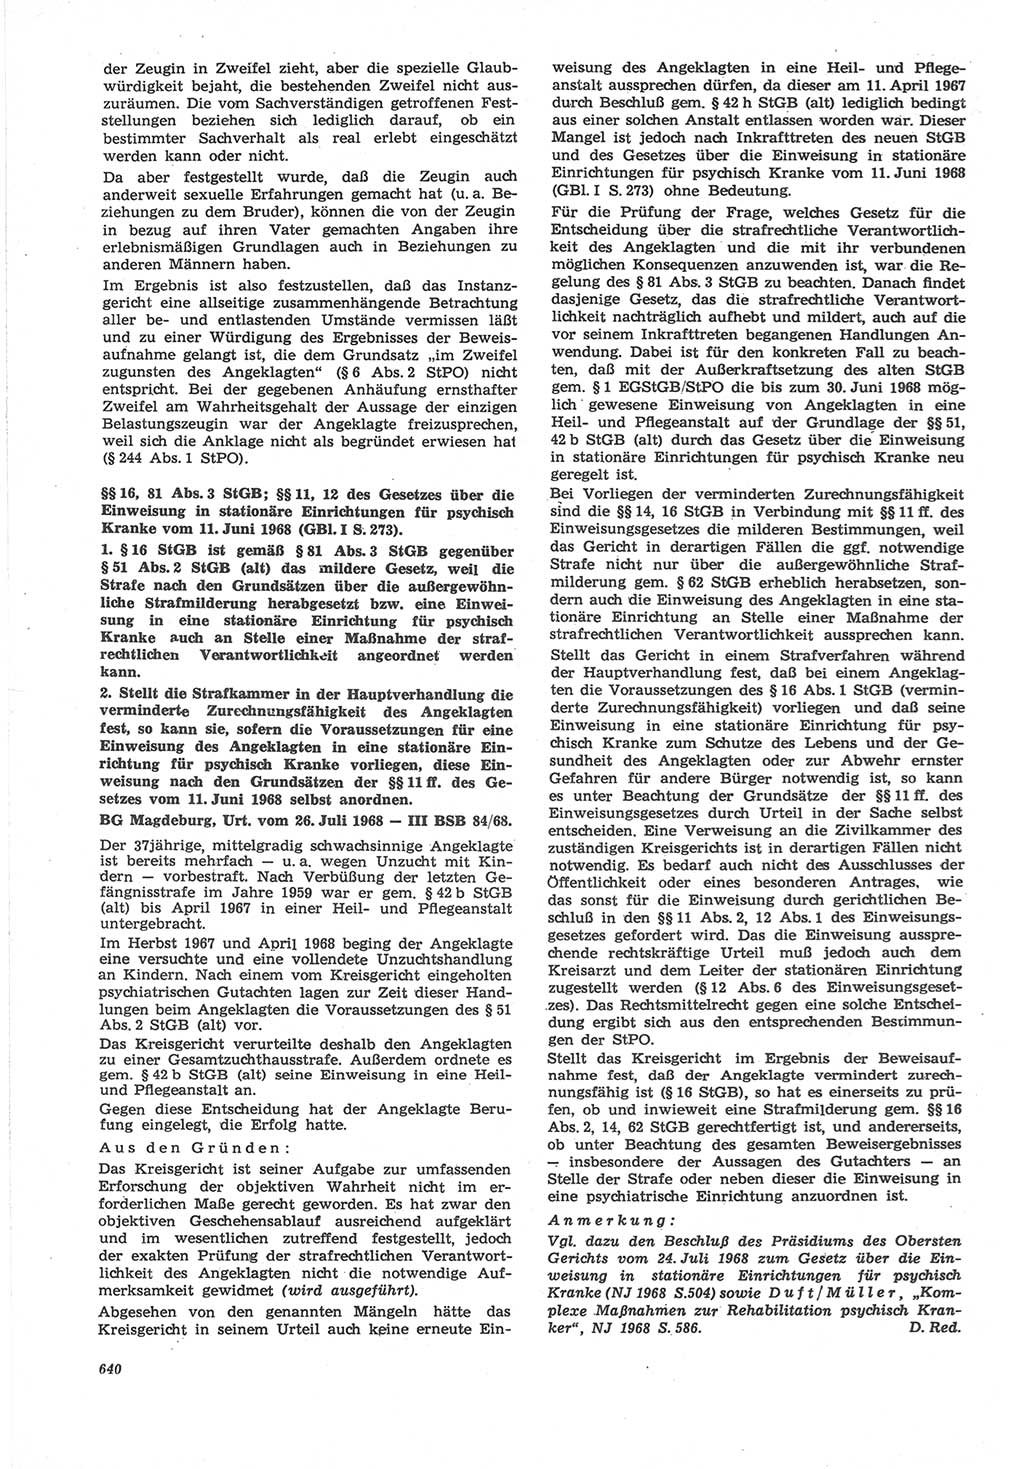 Neue Justiz (NJ), Zeitschrift für Recht und Rechtswissenschaft [Deutsche Demokratische Republik (DDR)], 22. Jahrgang 1968, Seite 640 (NJ DDR 1968, S. 640)